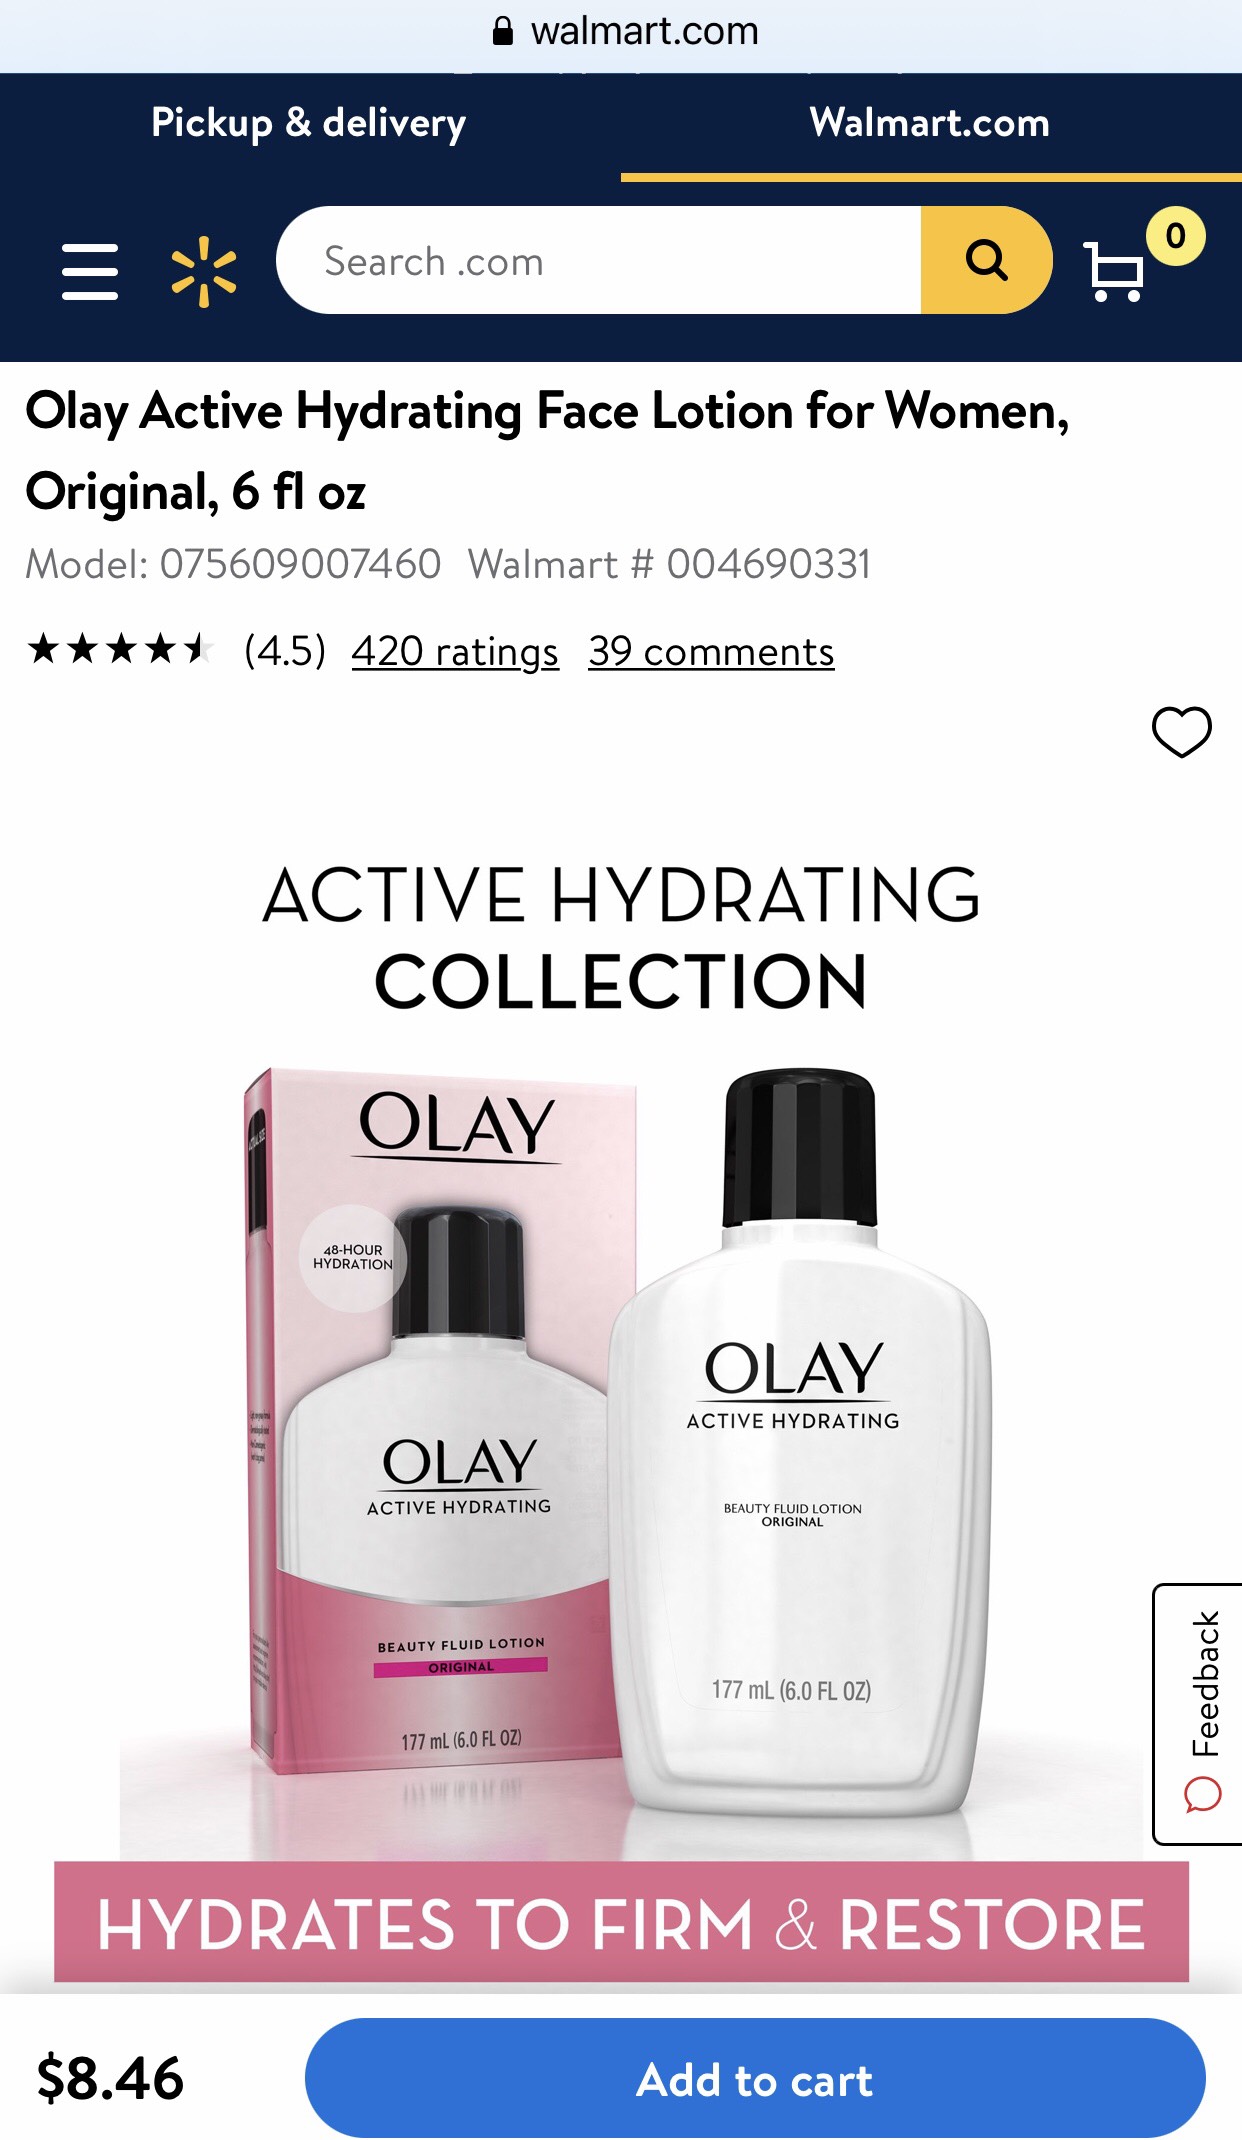 Olay beauty fluid lotion,active hydrating,original,6 fl oz (177 ml)